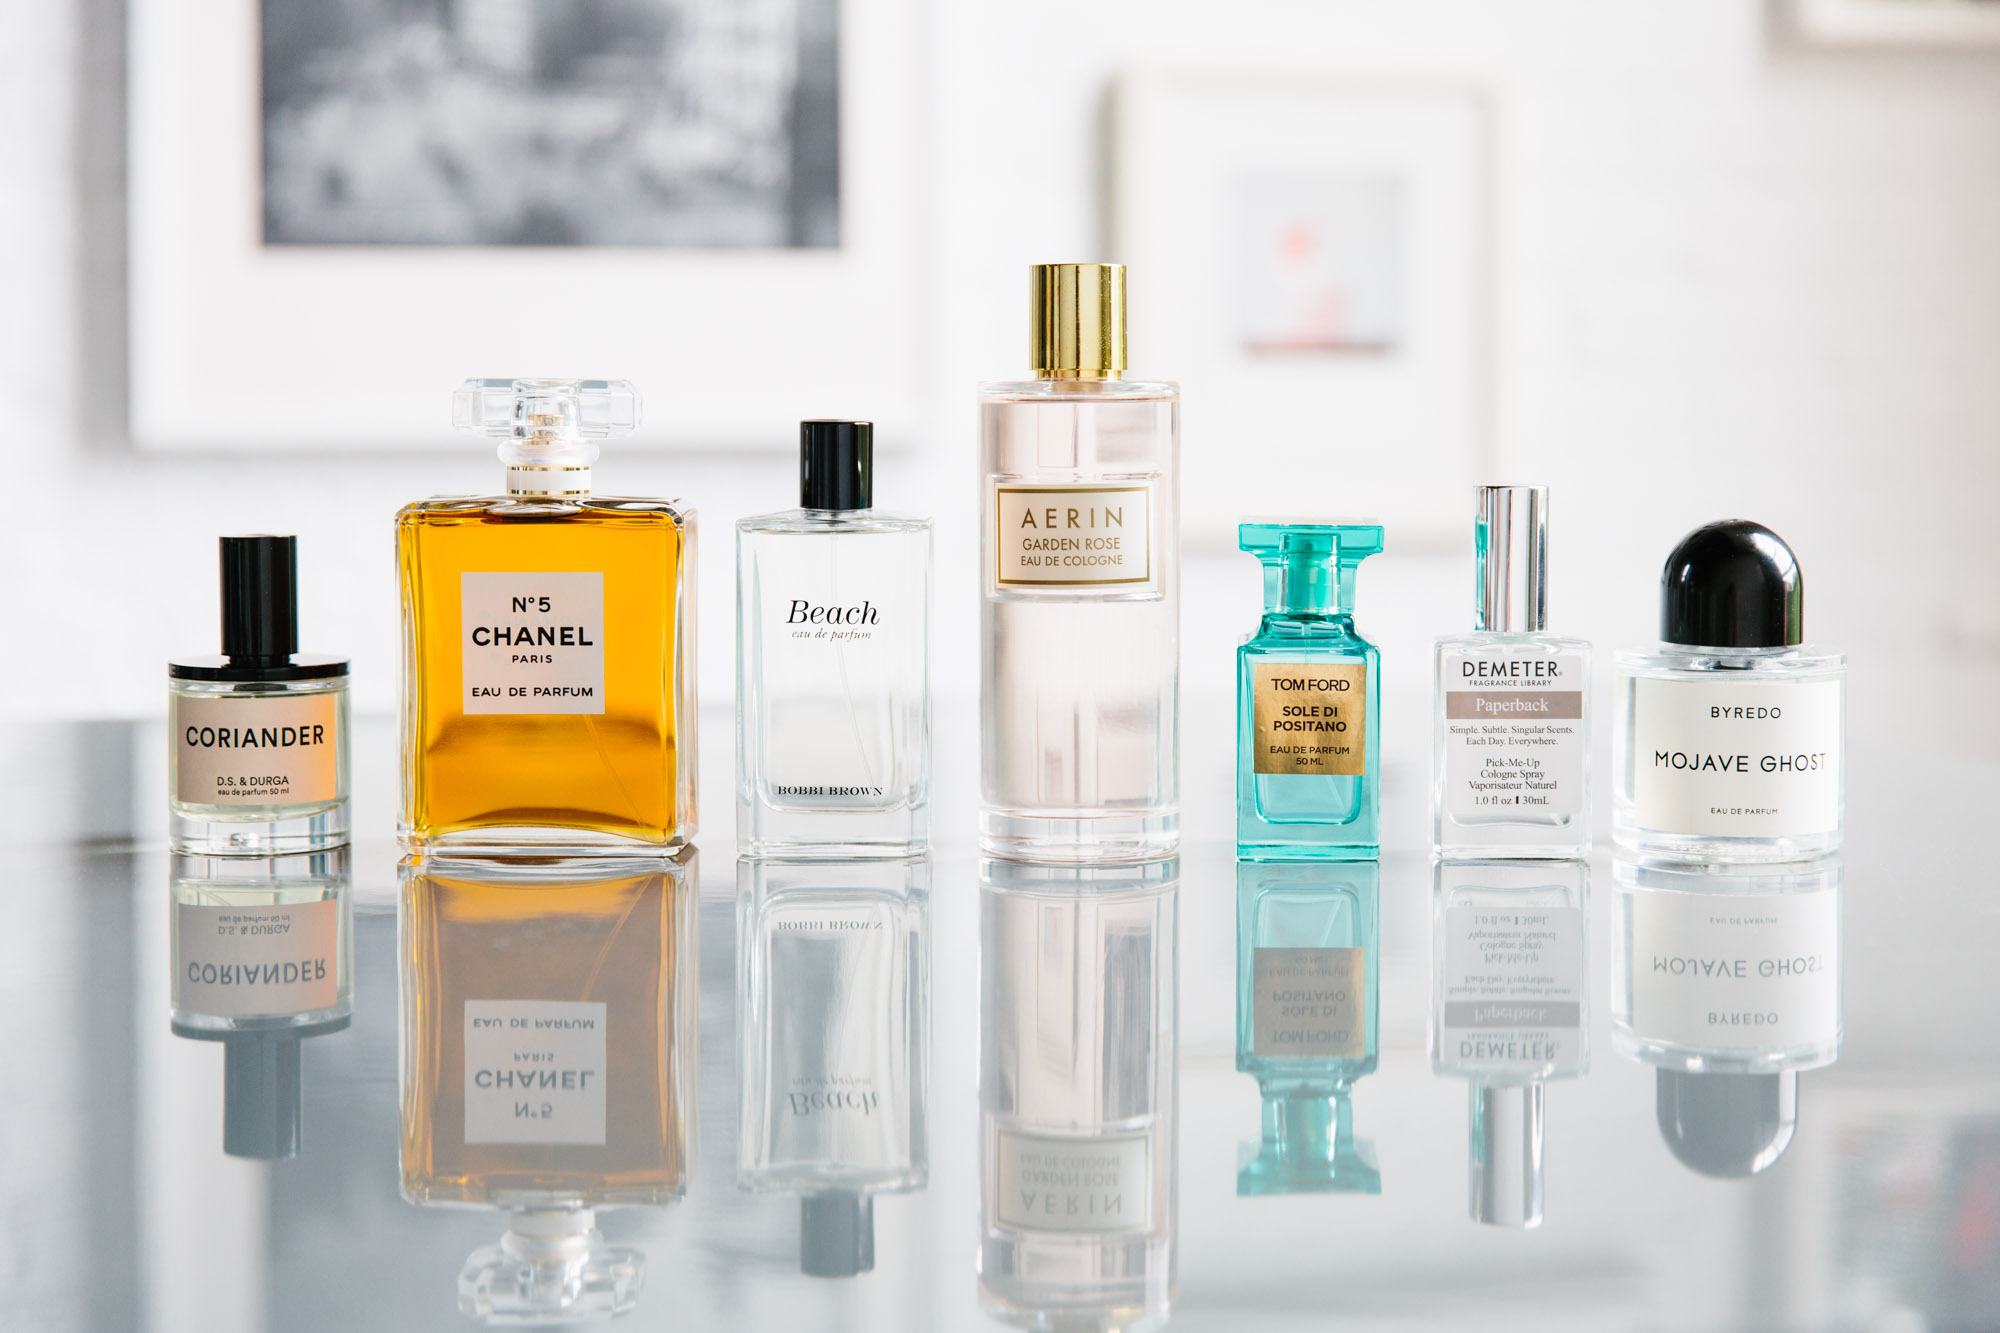 perfumes best - Nuochoarosa.com - Nước hoa cao cấp, chính hãng giá tốt, mẫu mới